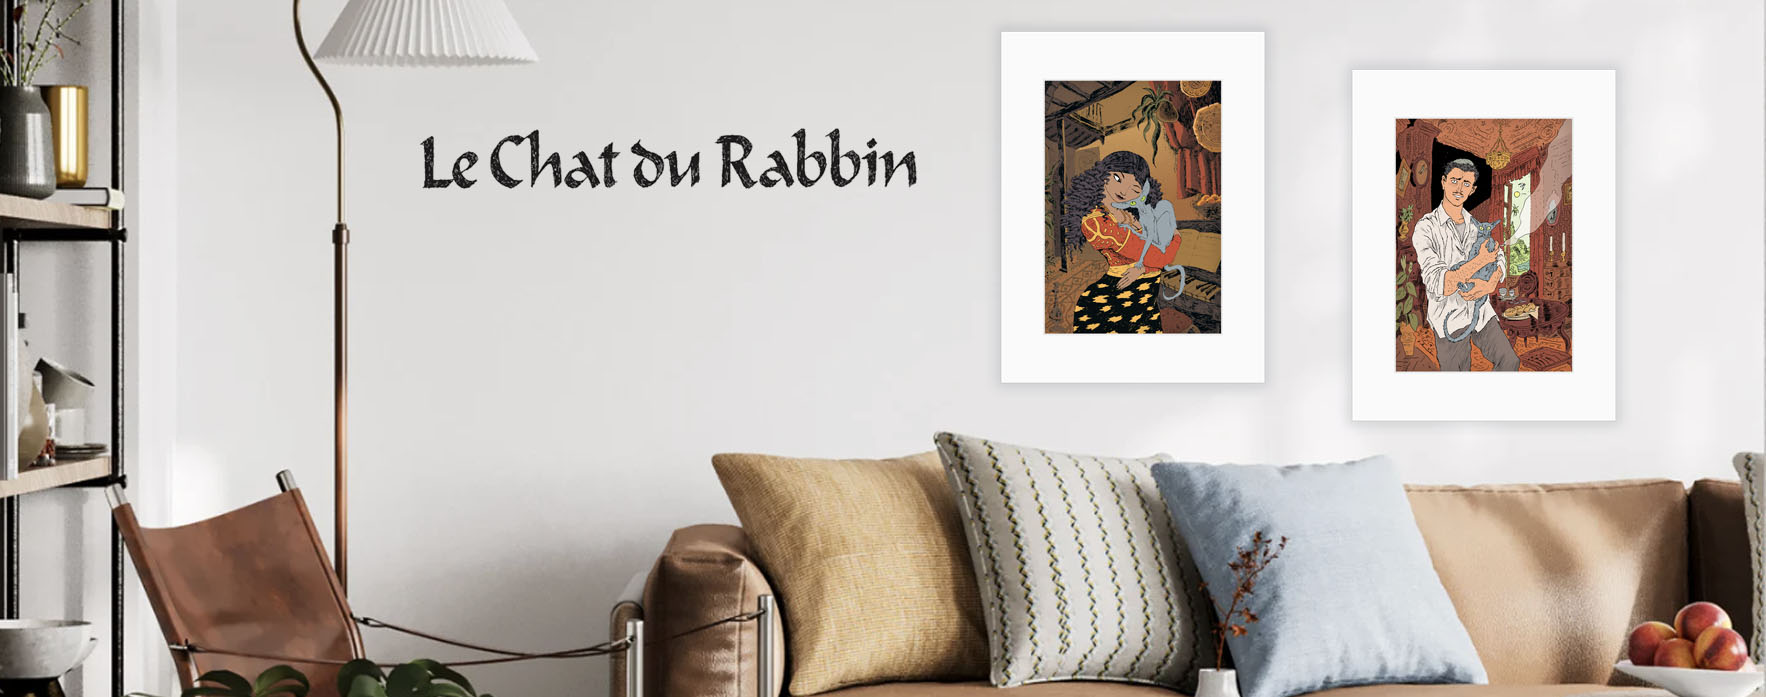 Le chat du rabbin tirages de collection